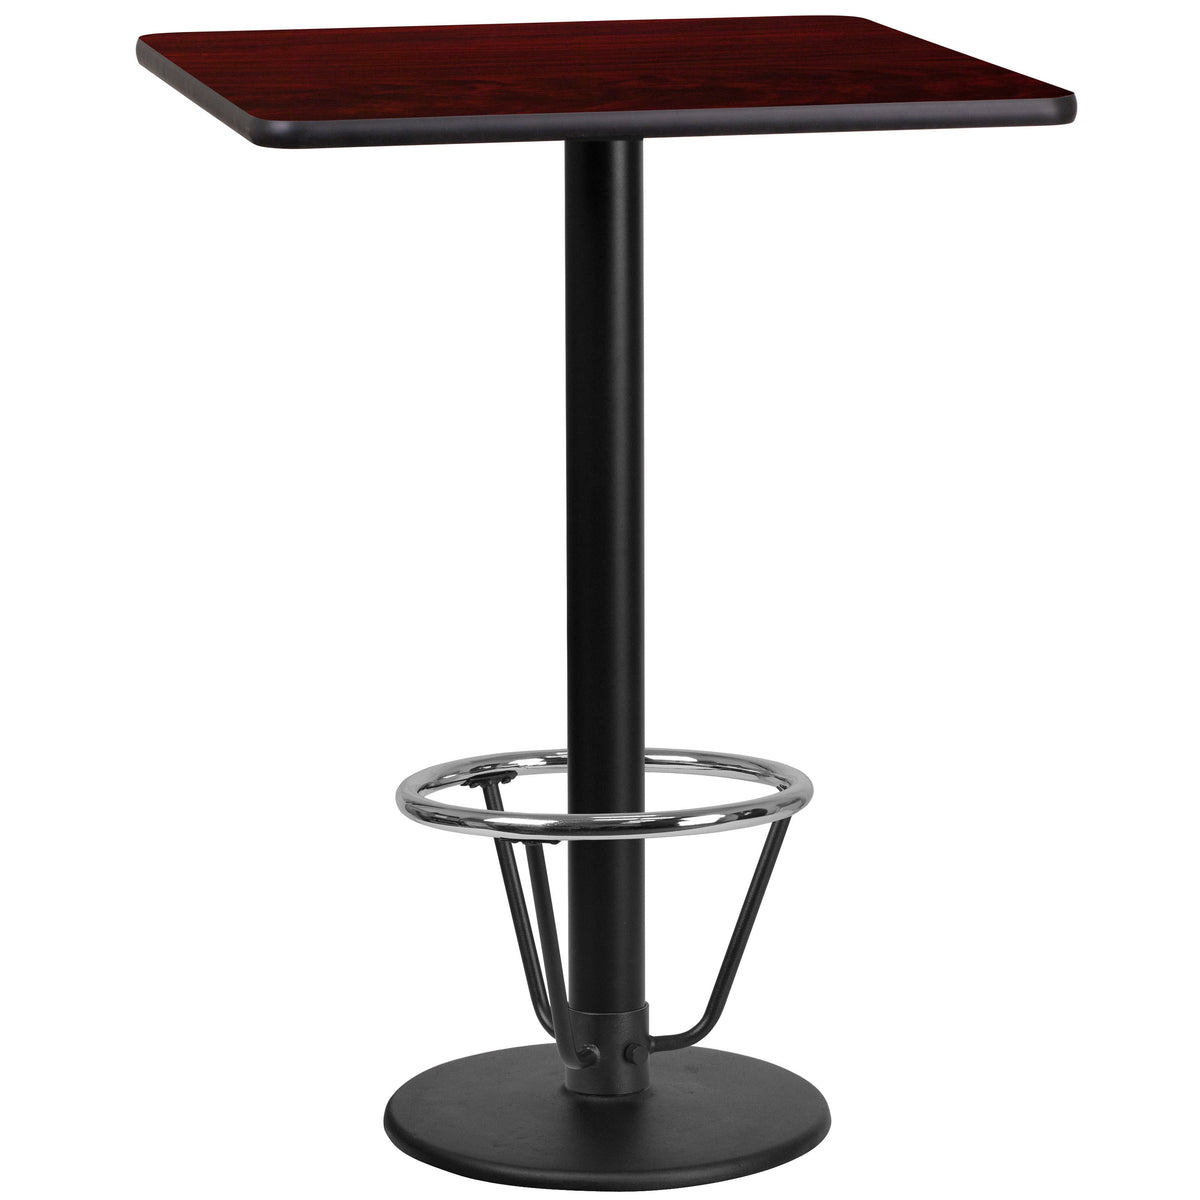 Mahogany |#| 24inch SQ Mahogany Laminate Table Top with 18inch RD Bar Height Table Base & Foot Ring